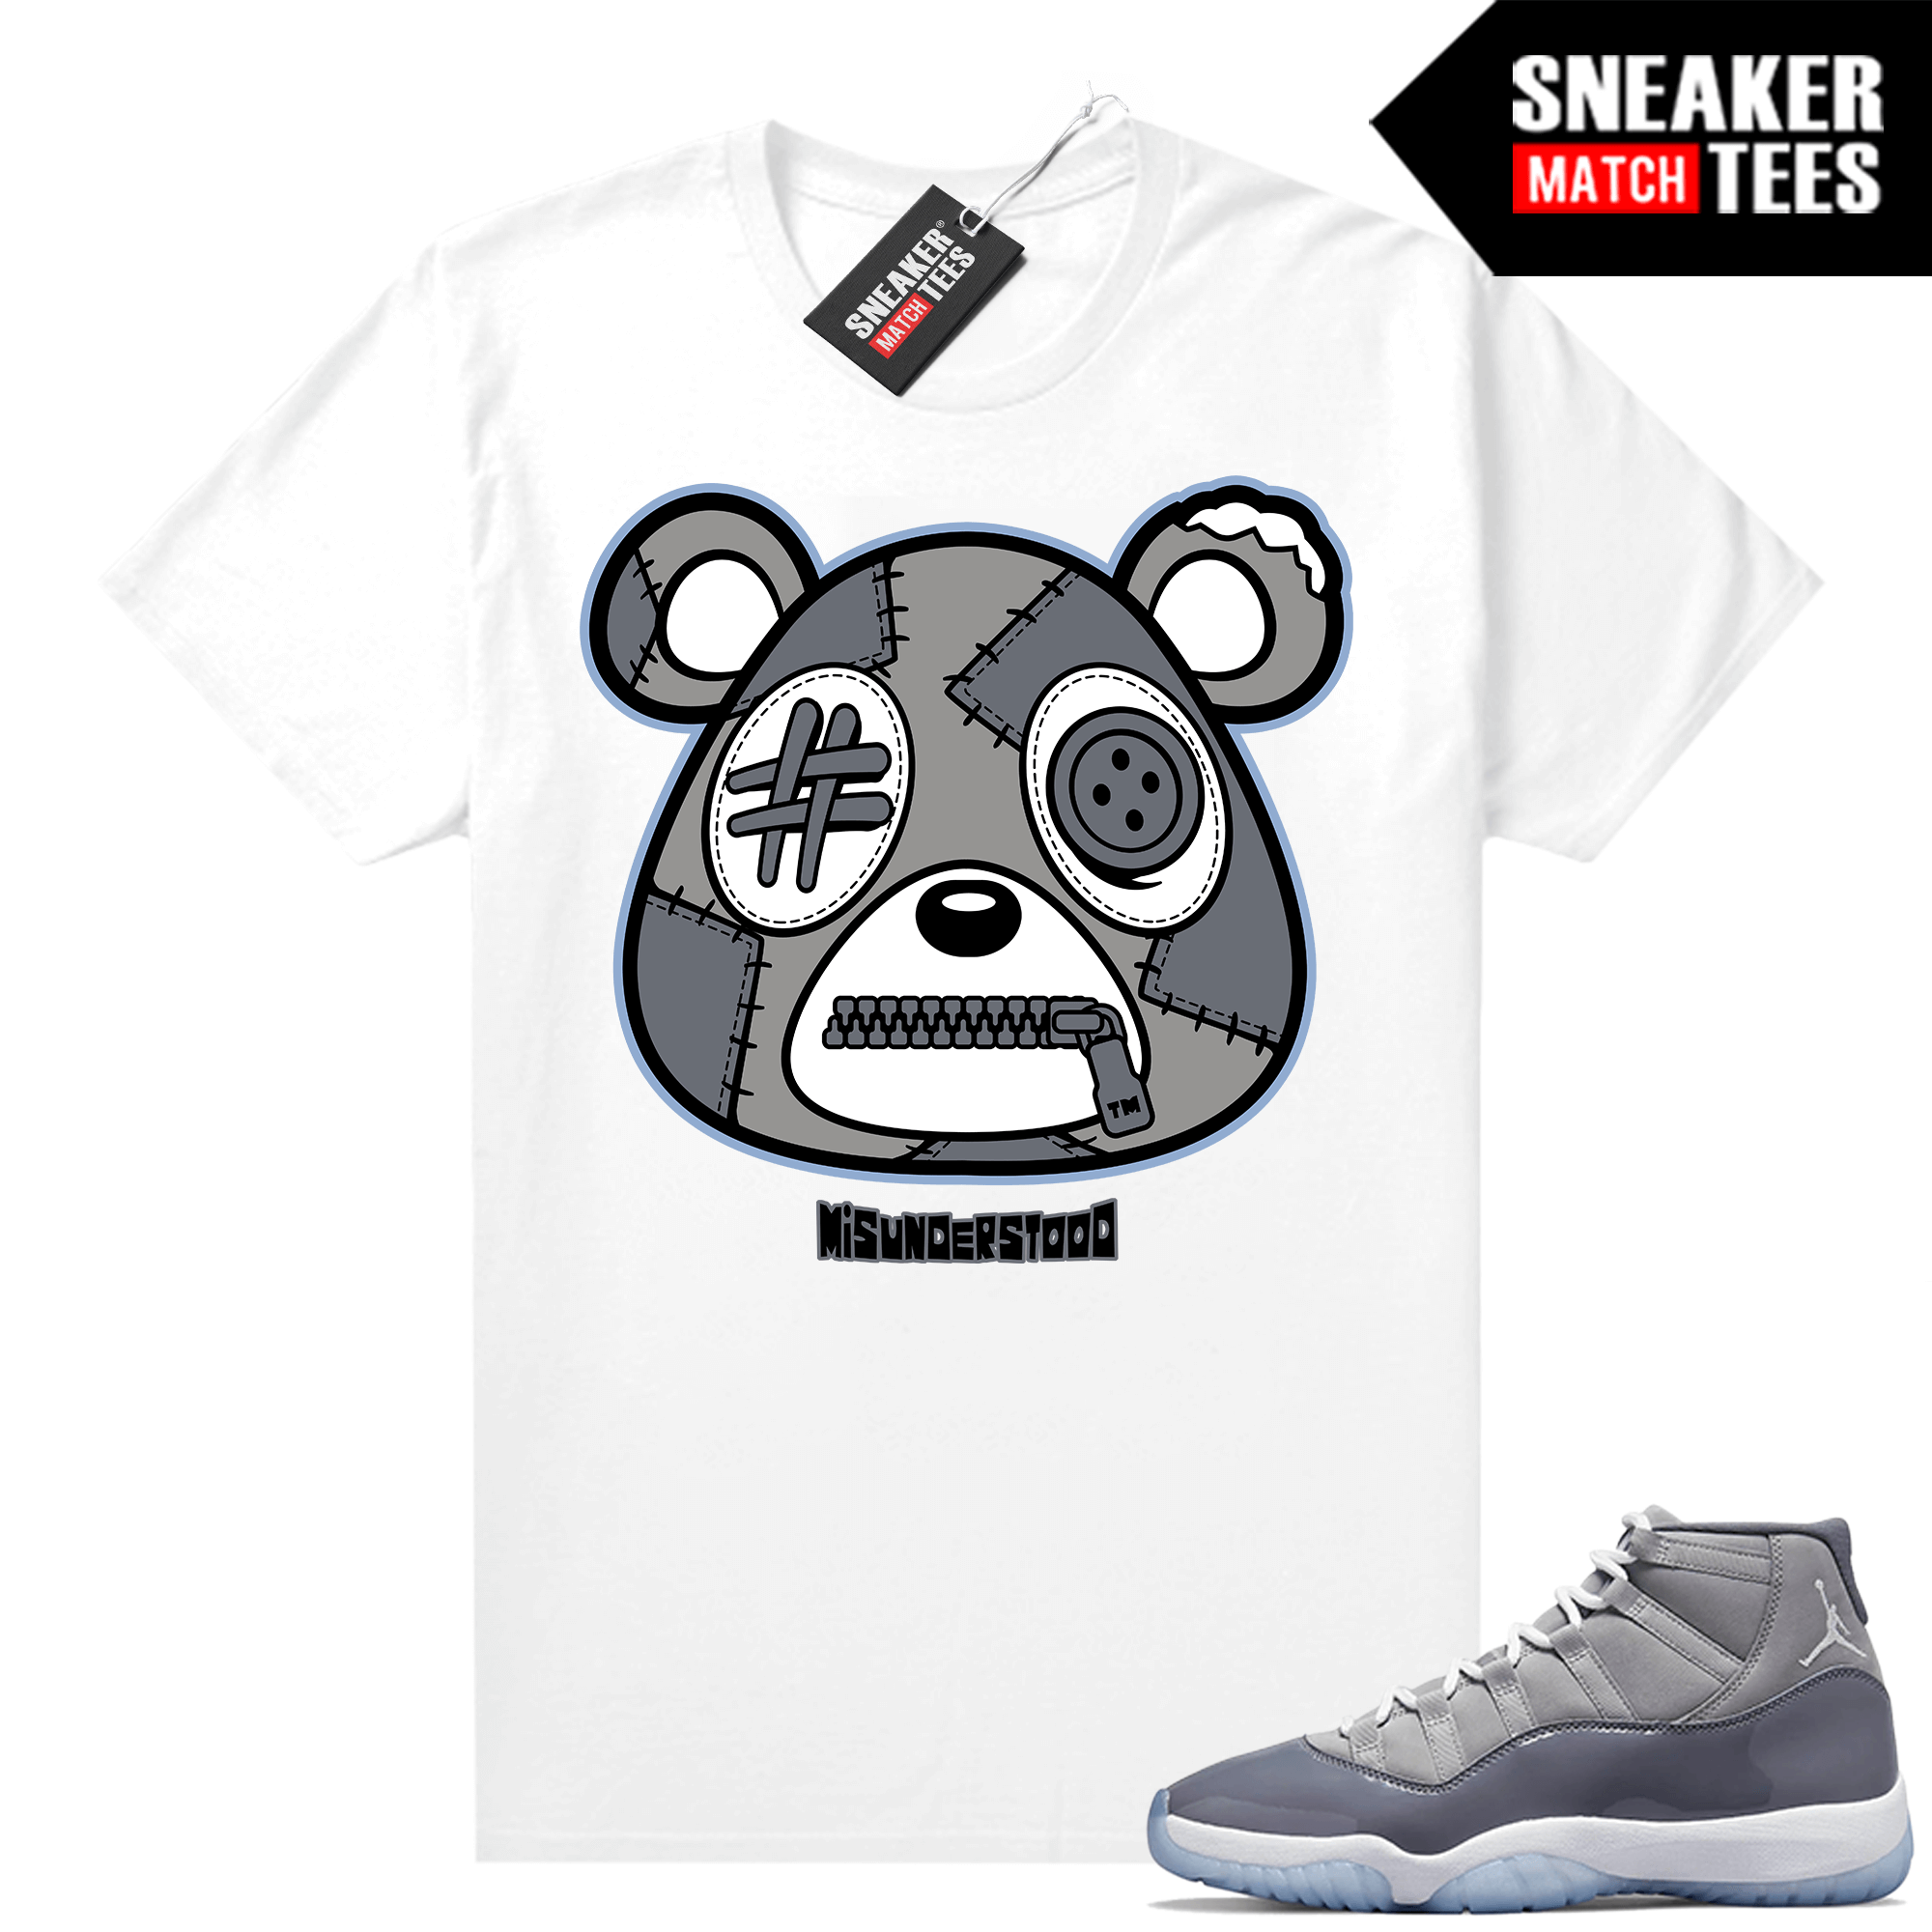 Cool Grey 11 Jordan Runtrendy Sneakers Sale Online White Misunderstood Bear